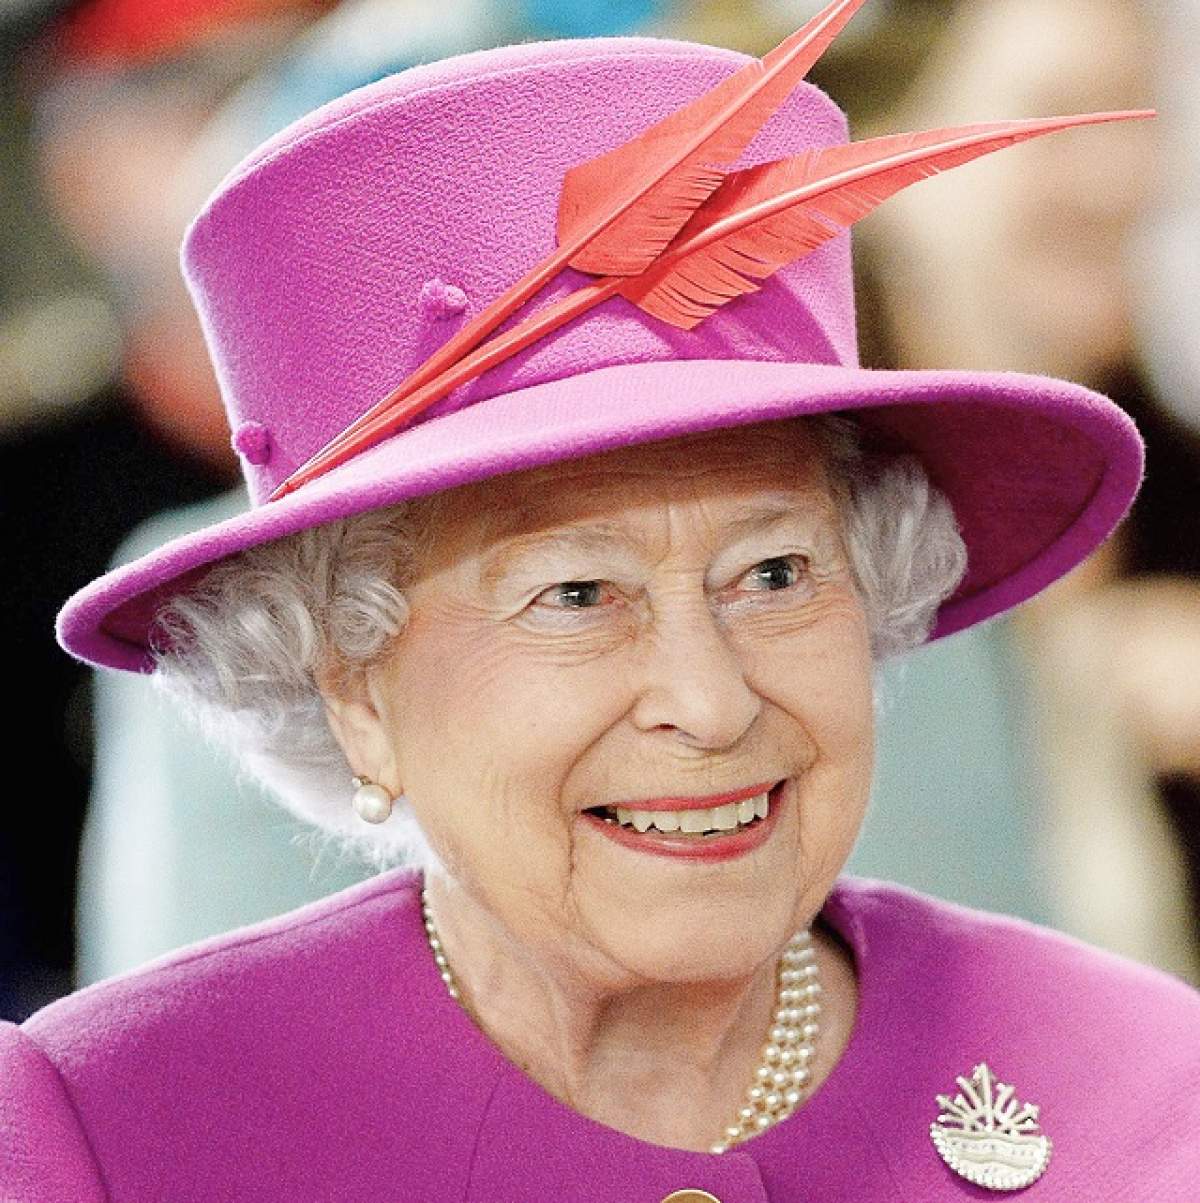 Regina Elisabeta a II-a a Marii Britanii şi-a făcut planuri de ziua ei!  Nu ai să crezi cine o să cânte la petrecerea acesteia